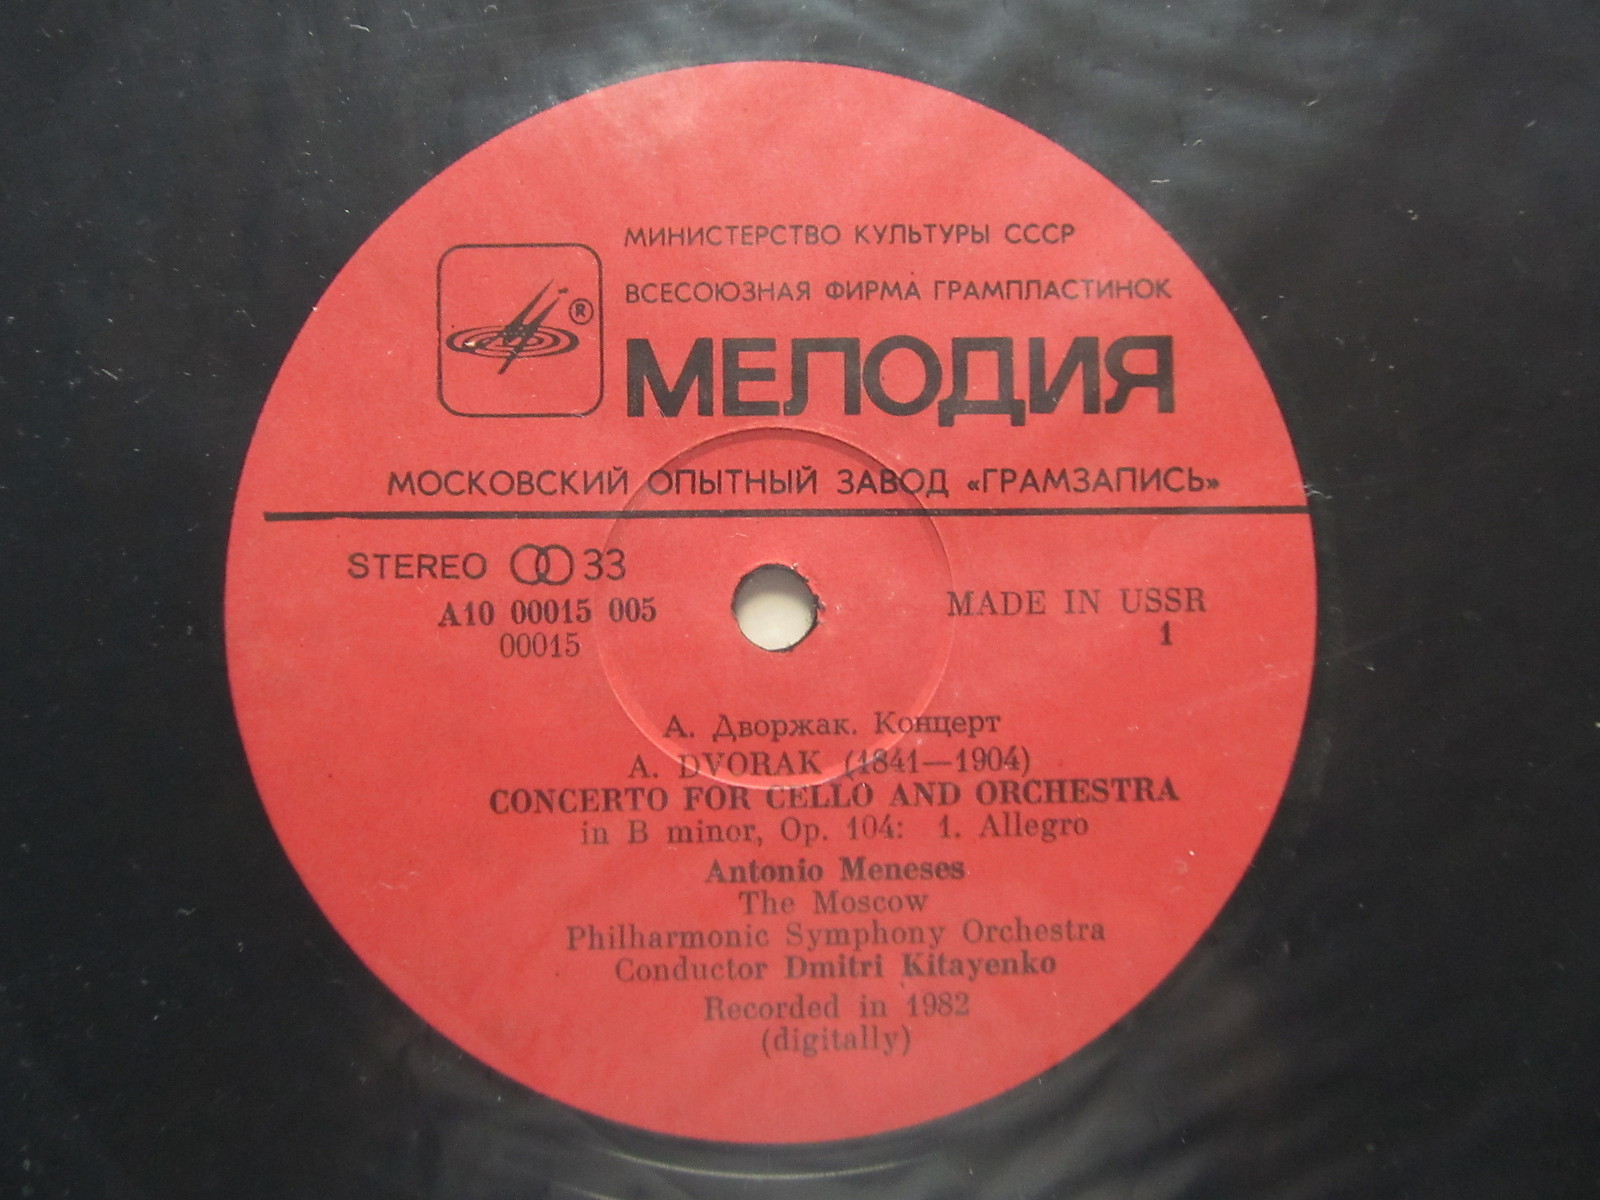 А. ДВОРЖАК (1841-1904): Концерт для виолончели с оркестром (А. Менезес, Д. Китаенко)